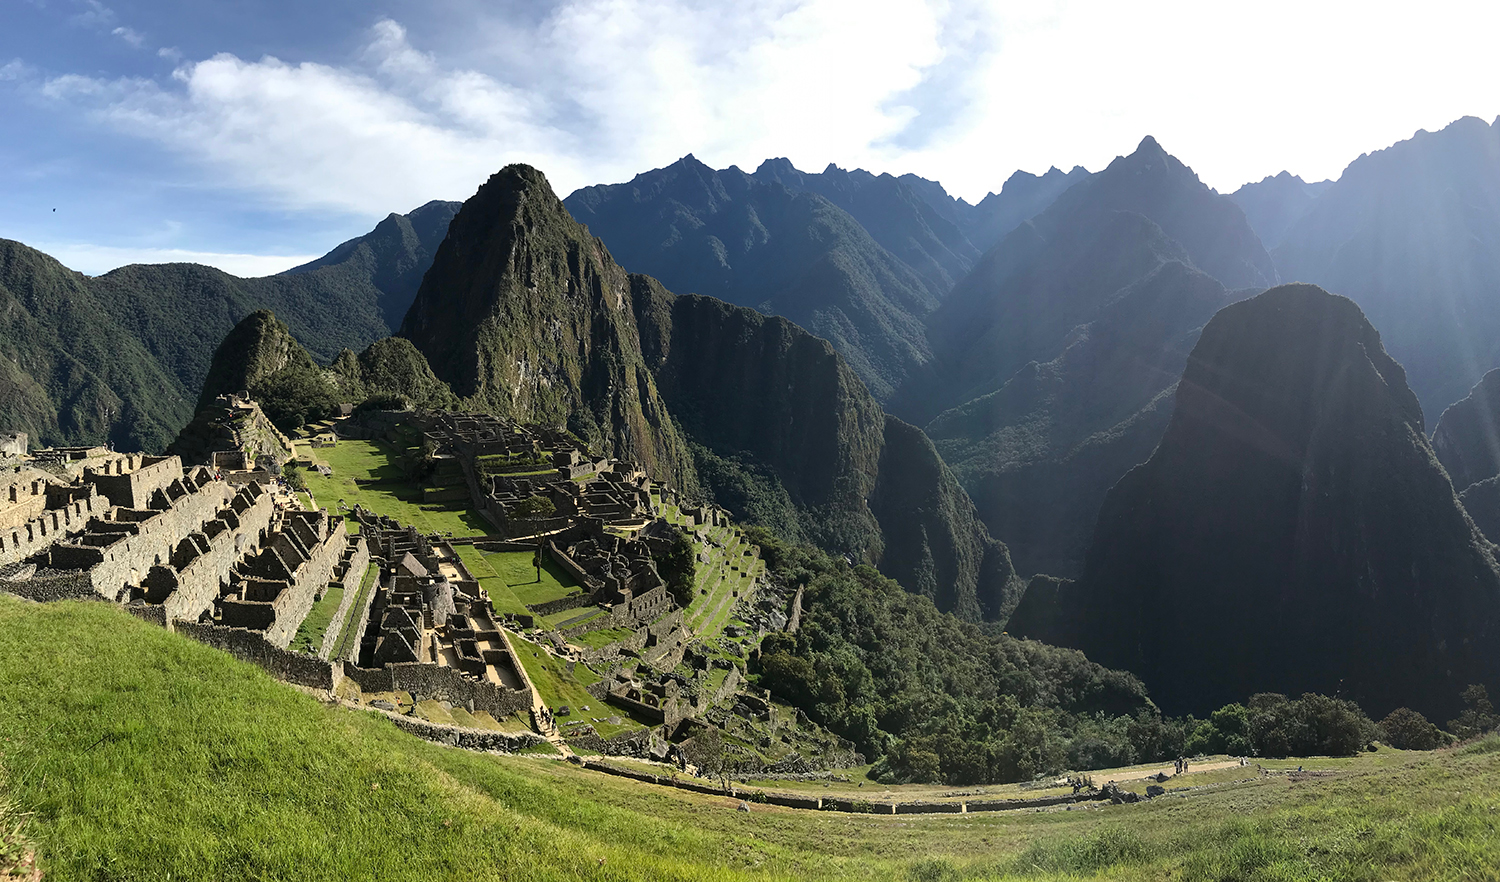 Camino Inca - Machu Picchu